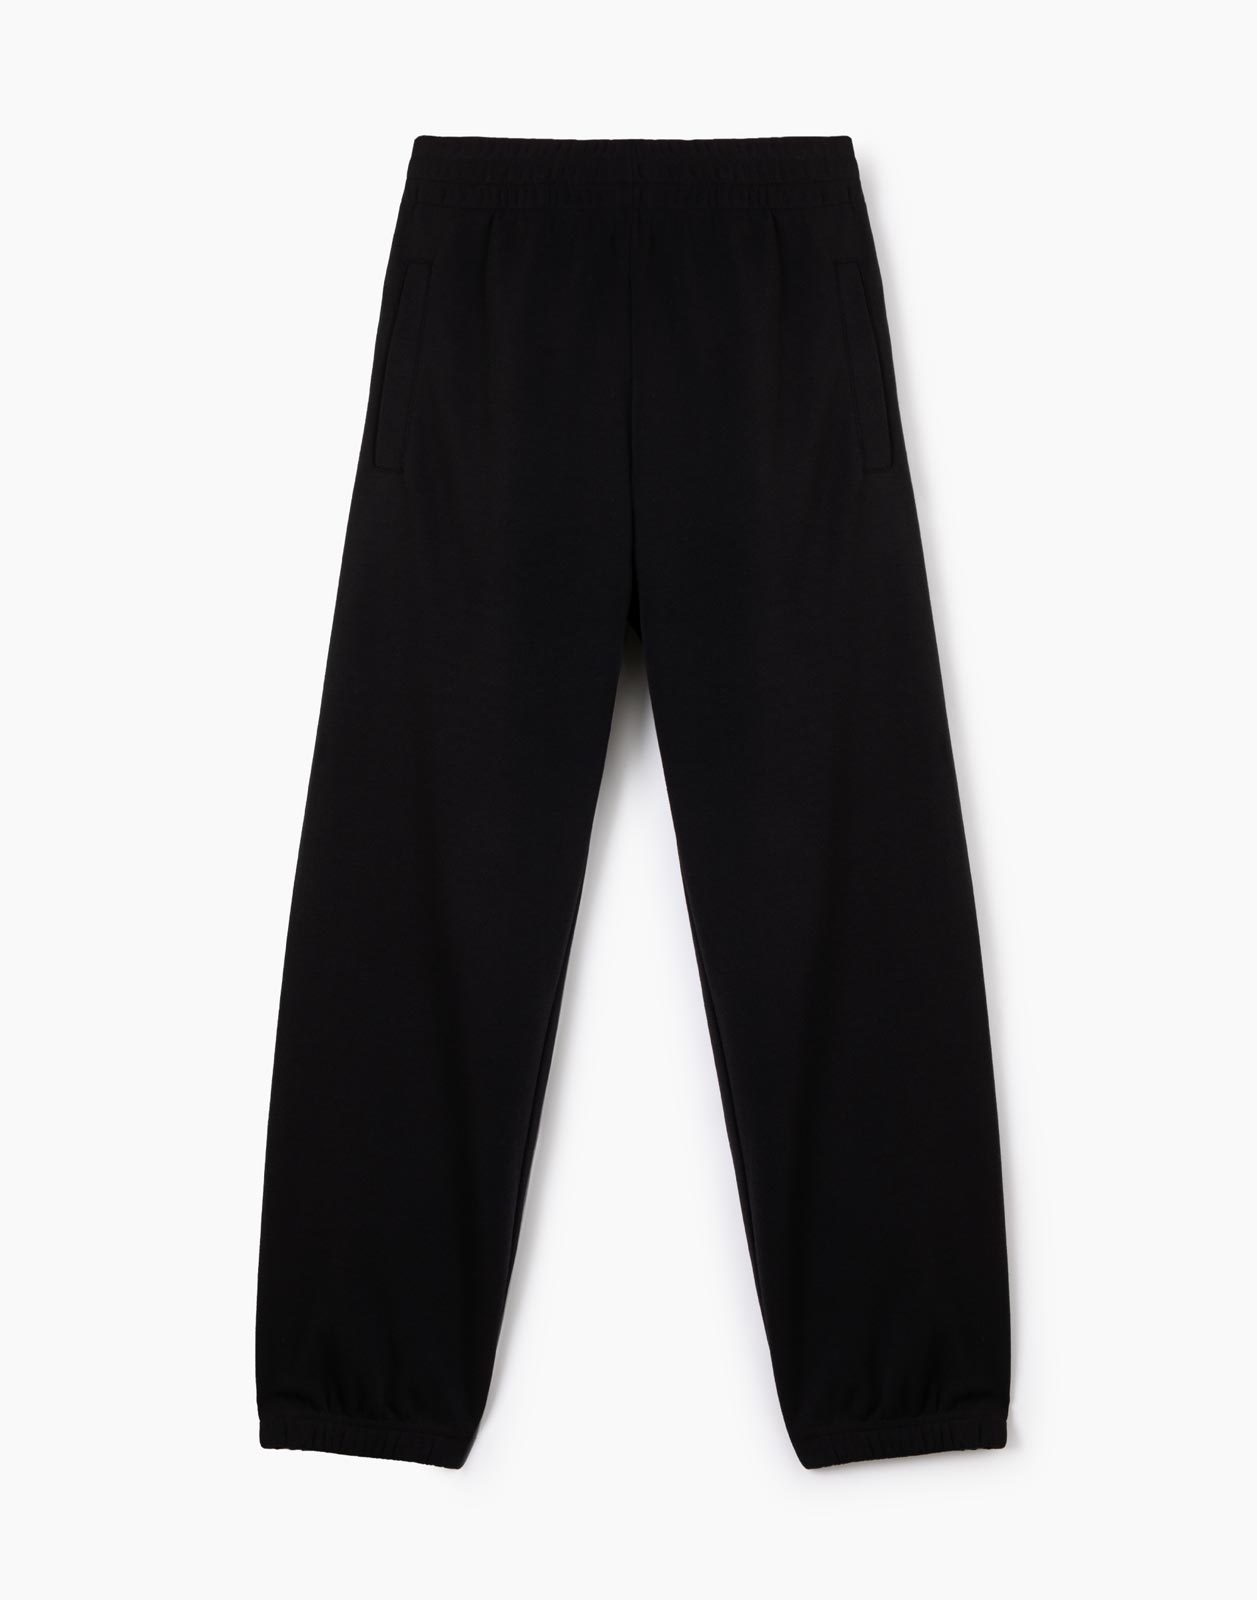 Чёрные спортивные брюки Jogger oversize для мальчика р.140